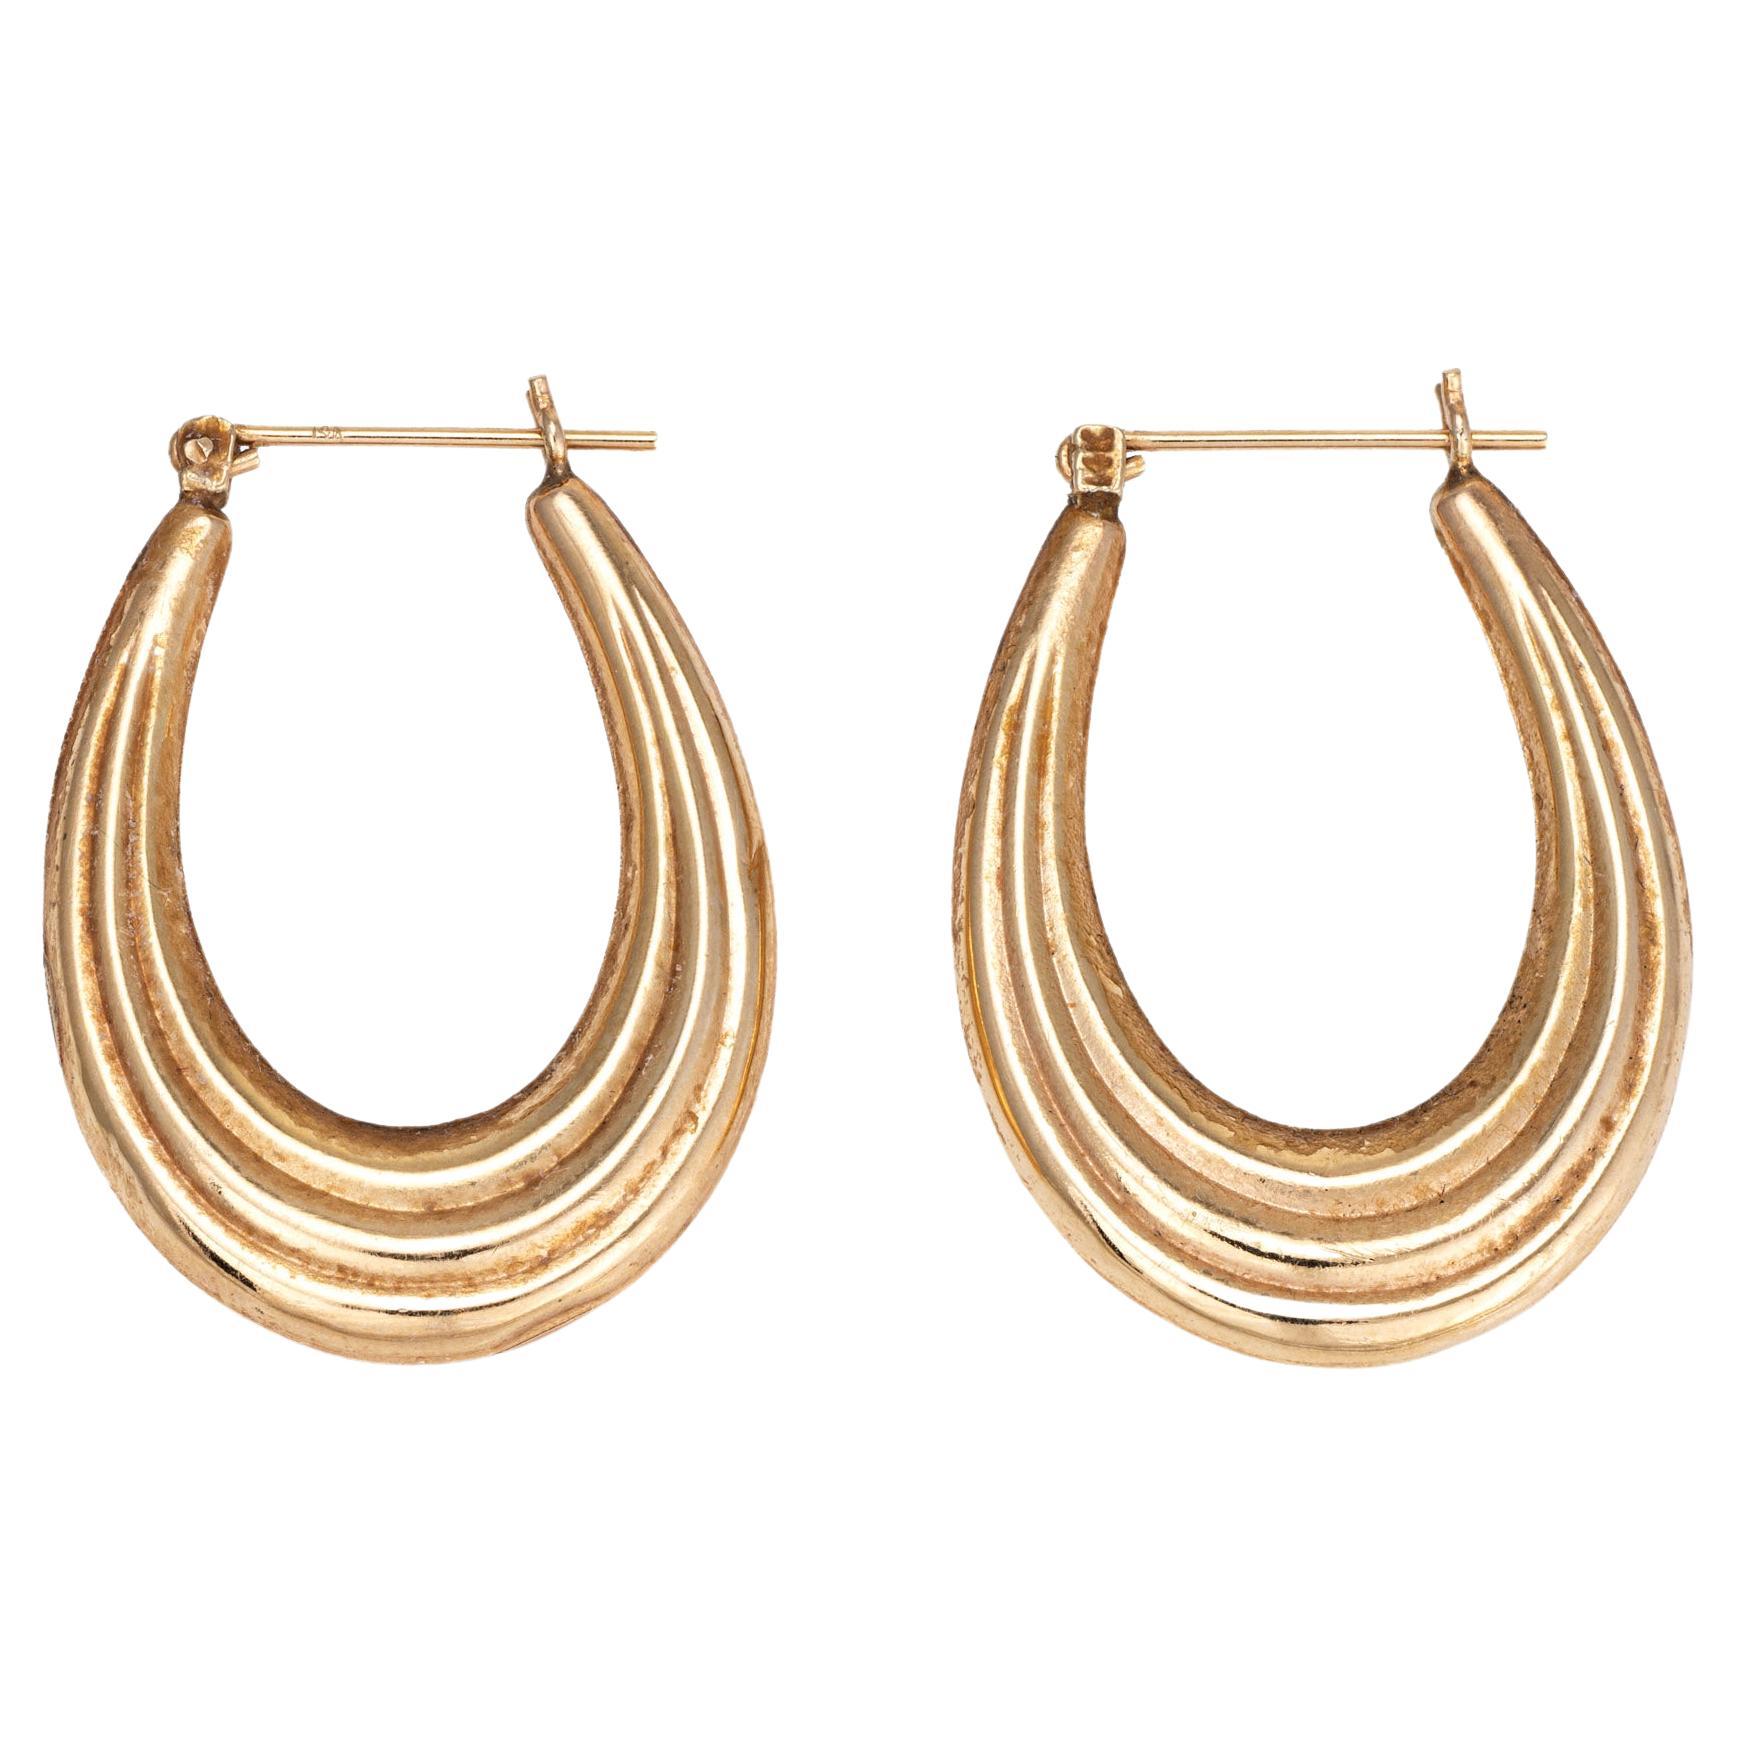 Ridged Oval Hoop Earrings Vintage 14k Yellow Gold Drops Estate Jewelry